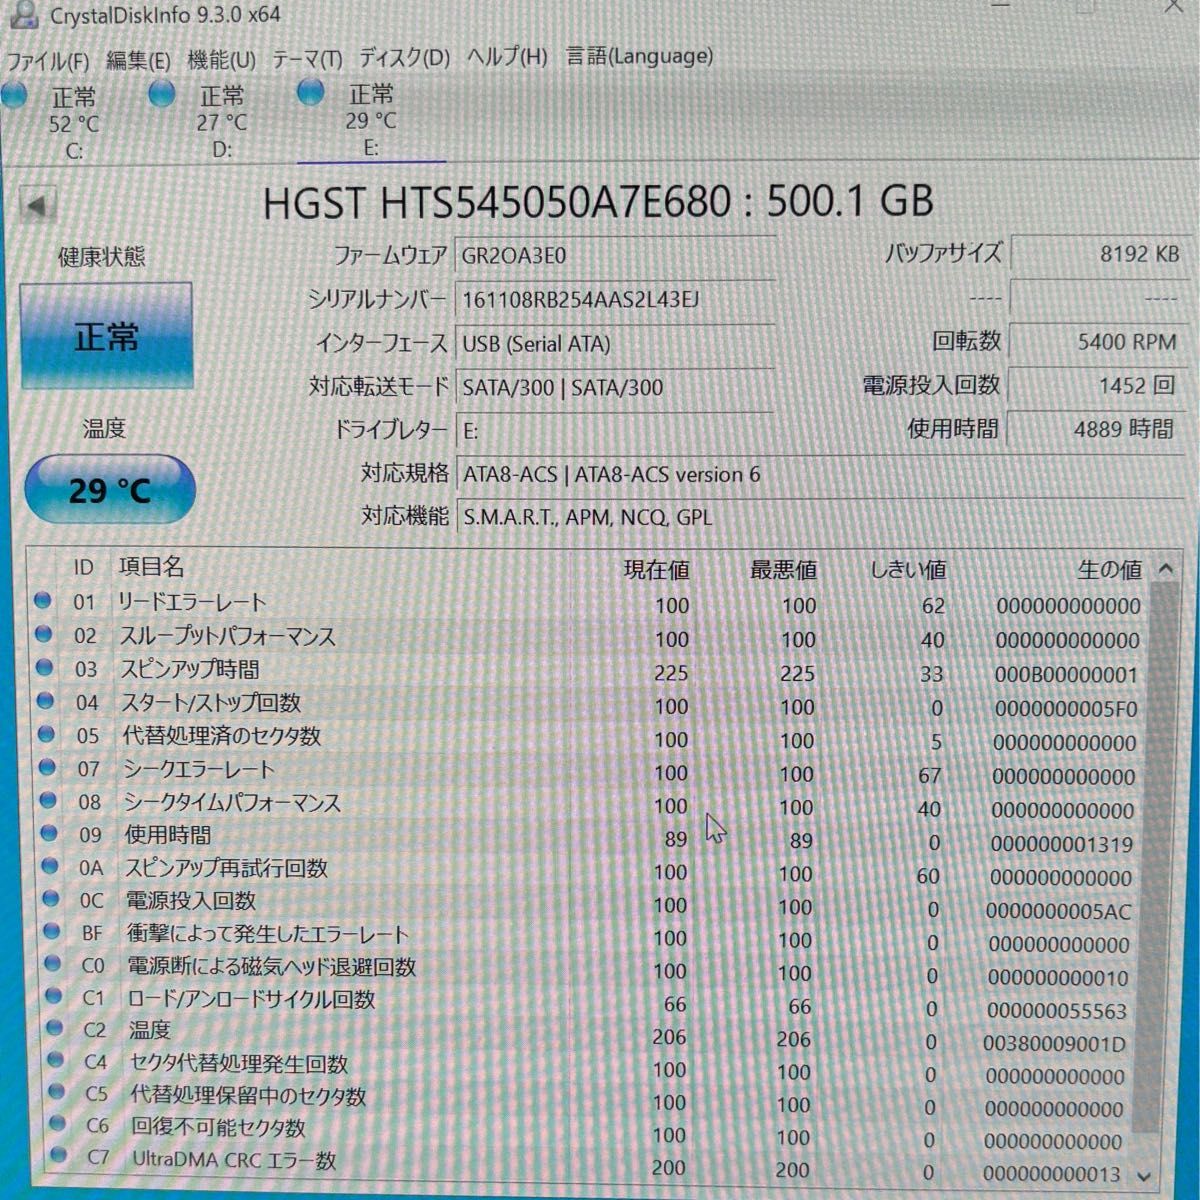 2.5 inch 500GB HGST HDD SATA 5400rpm ハードディスク 正常